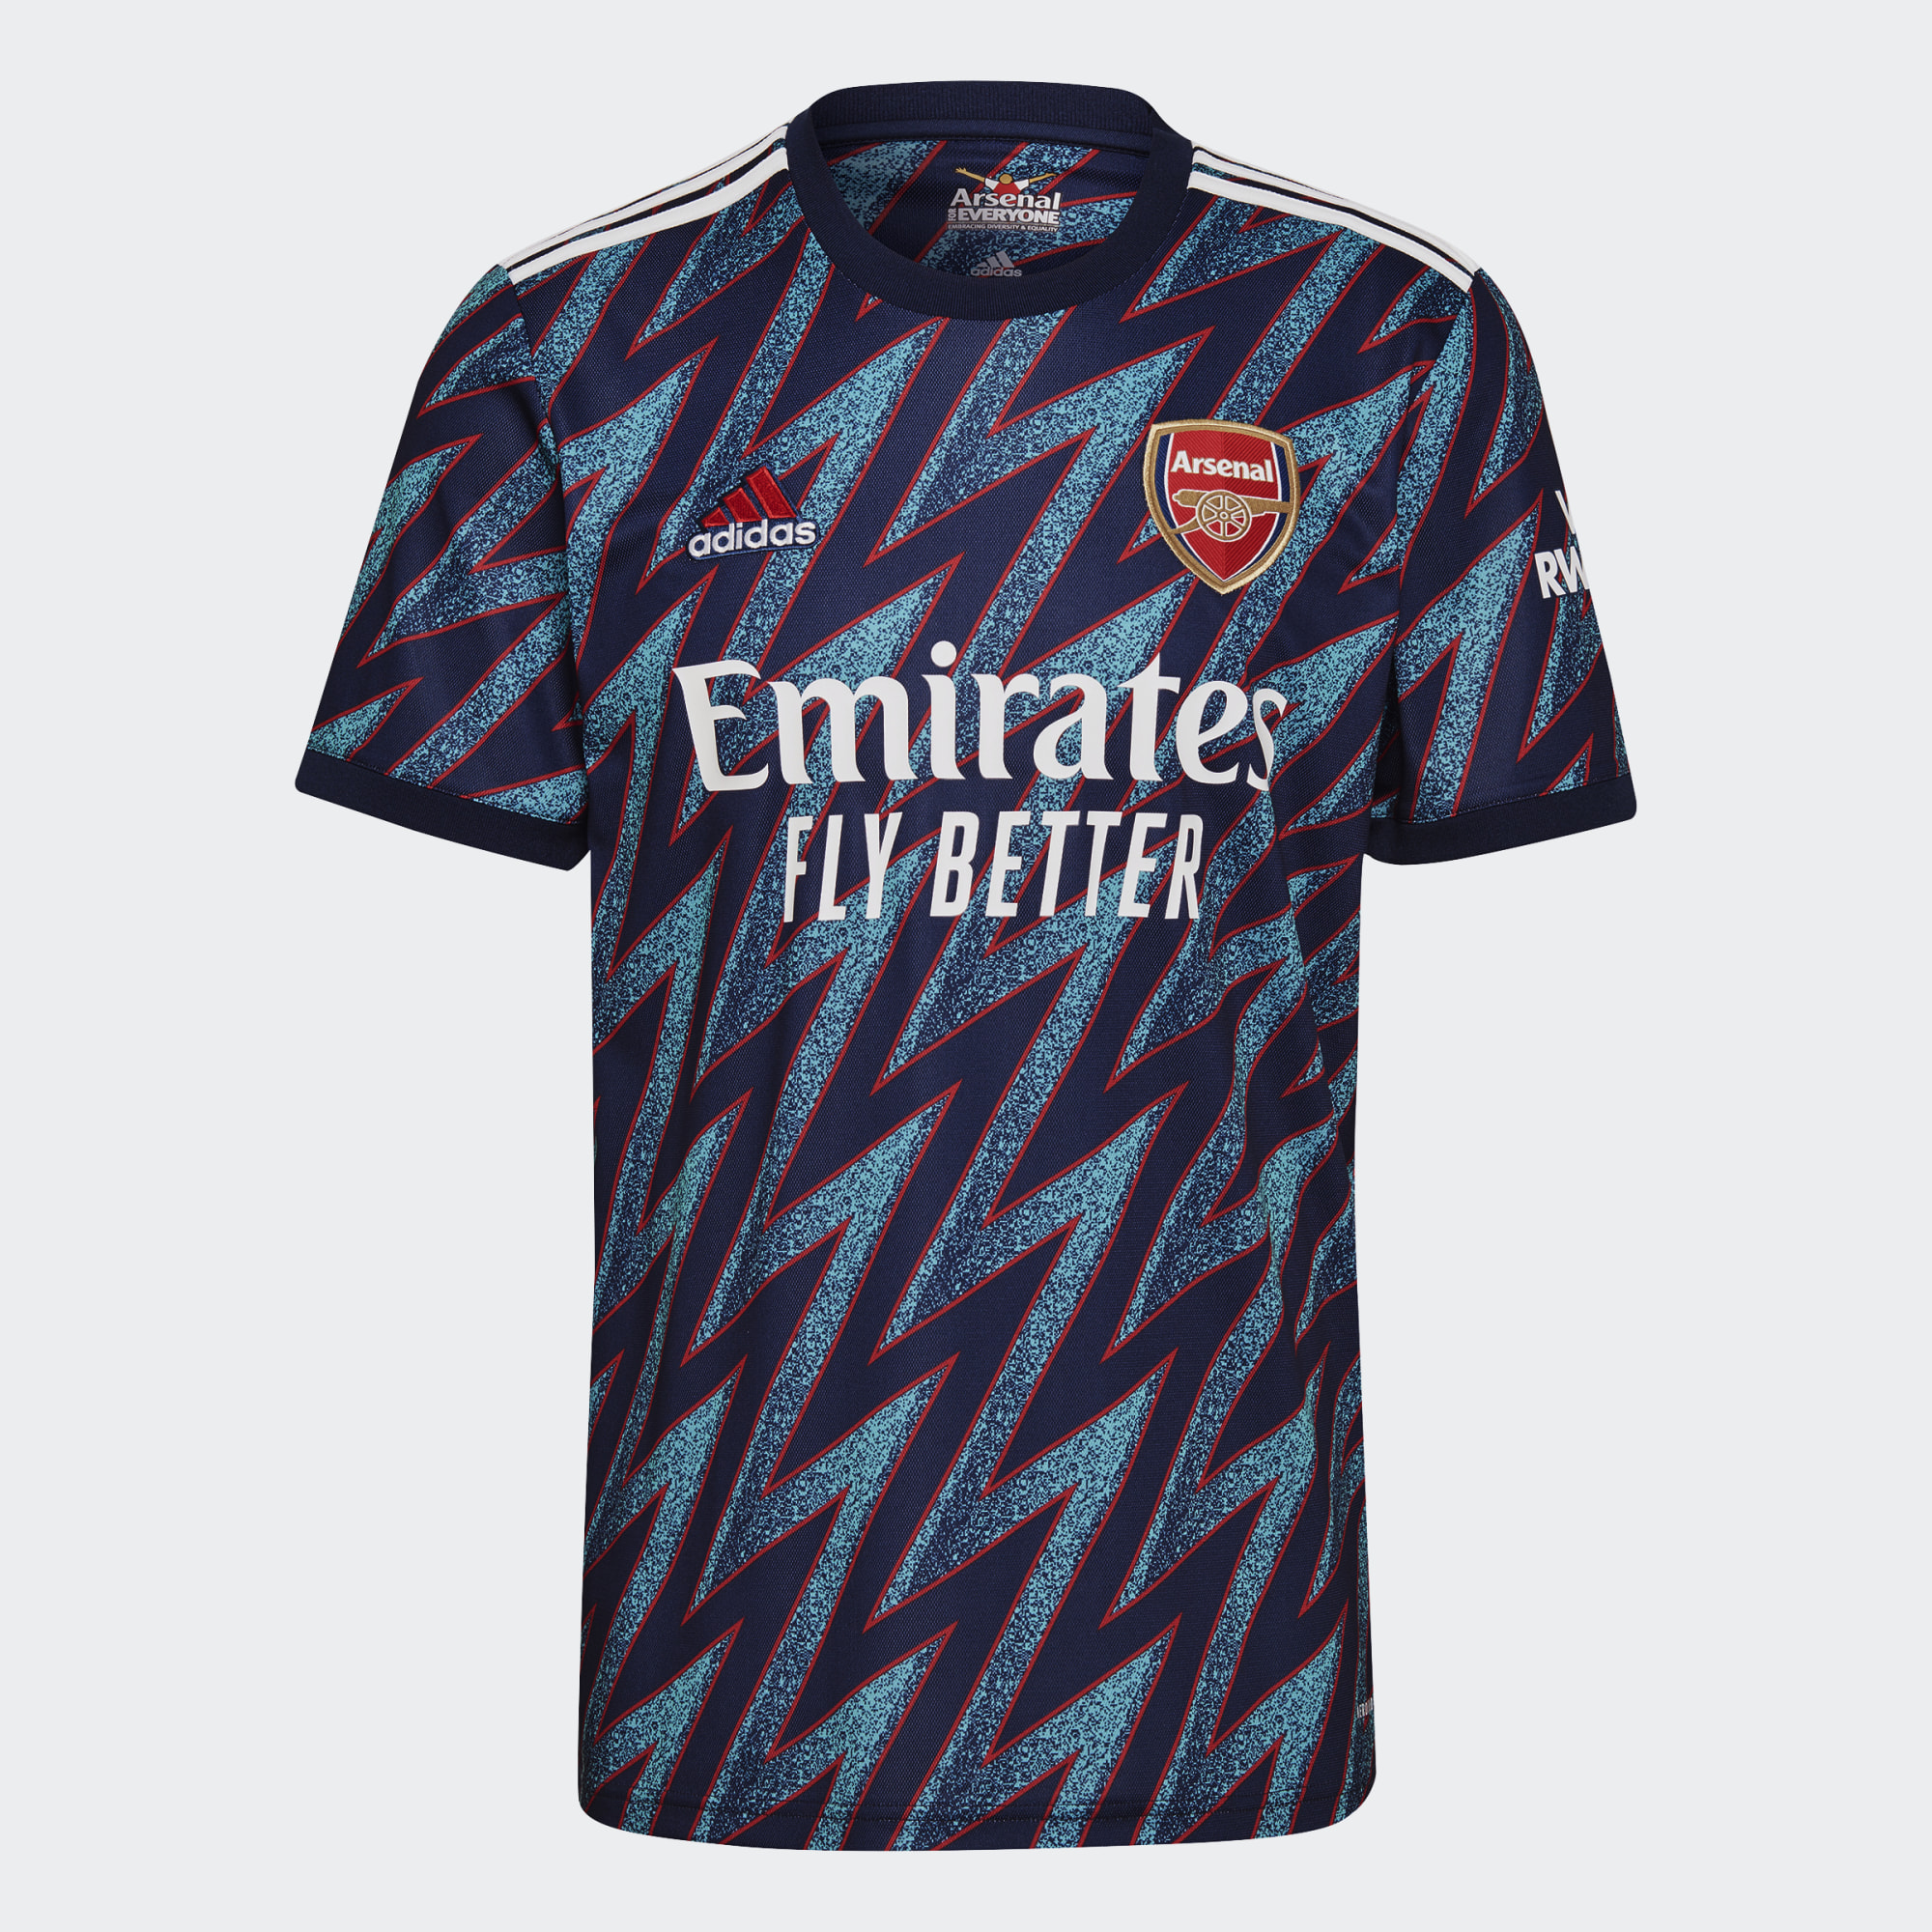 Arsenal 2021-22 Adidas Third Kit | 21/22 Kits | Football shirt blog